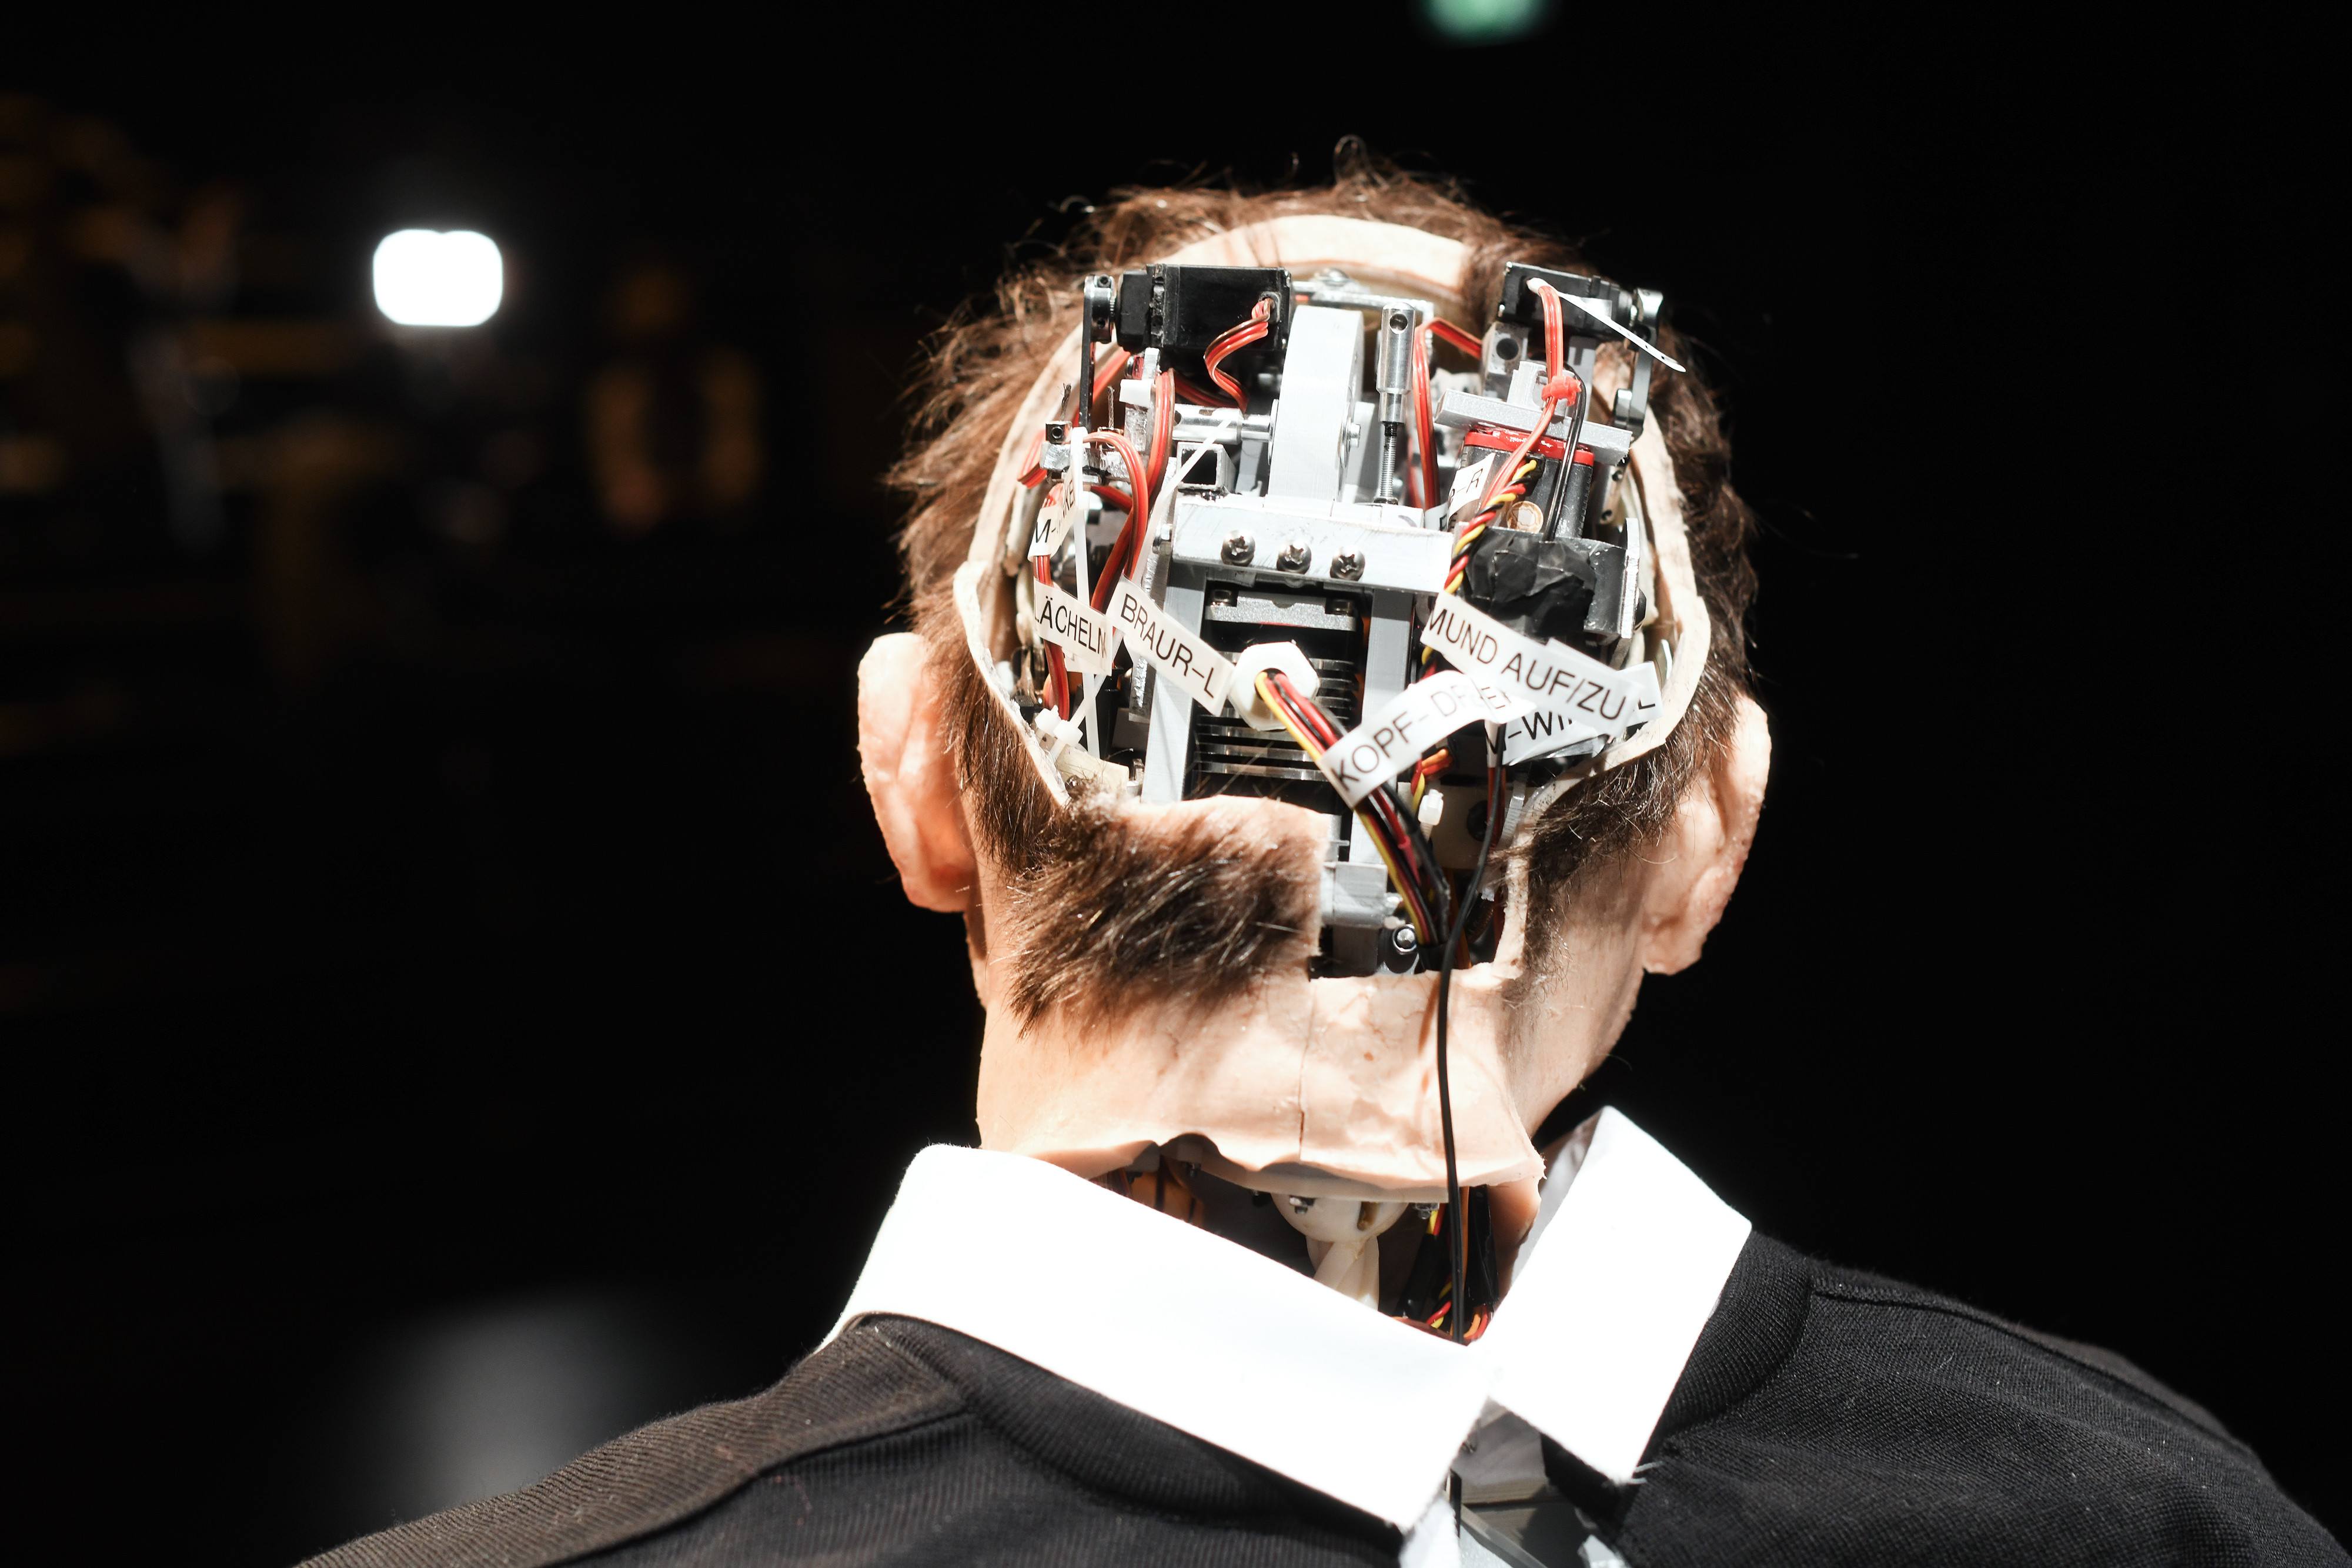 Der Hinterkopf des Roboters ist geöffnet und das Bild zeigt die Kabel und Technik darin.